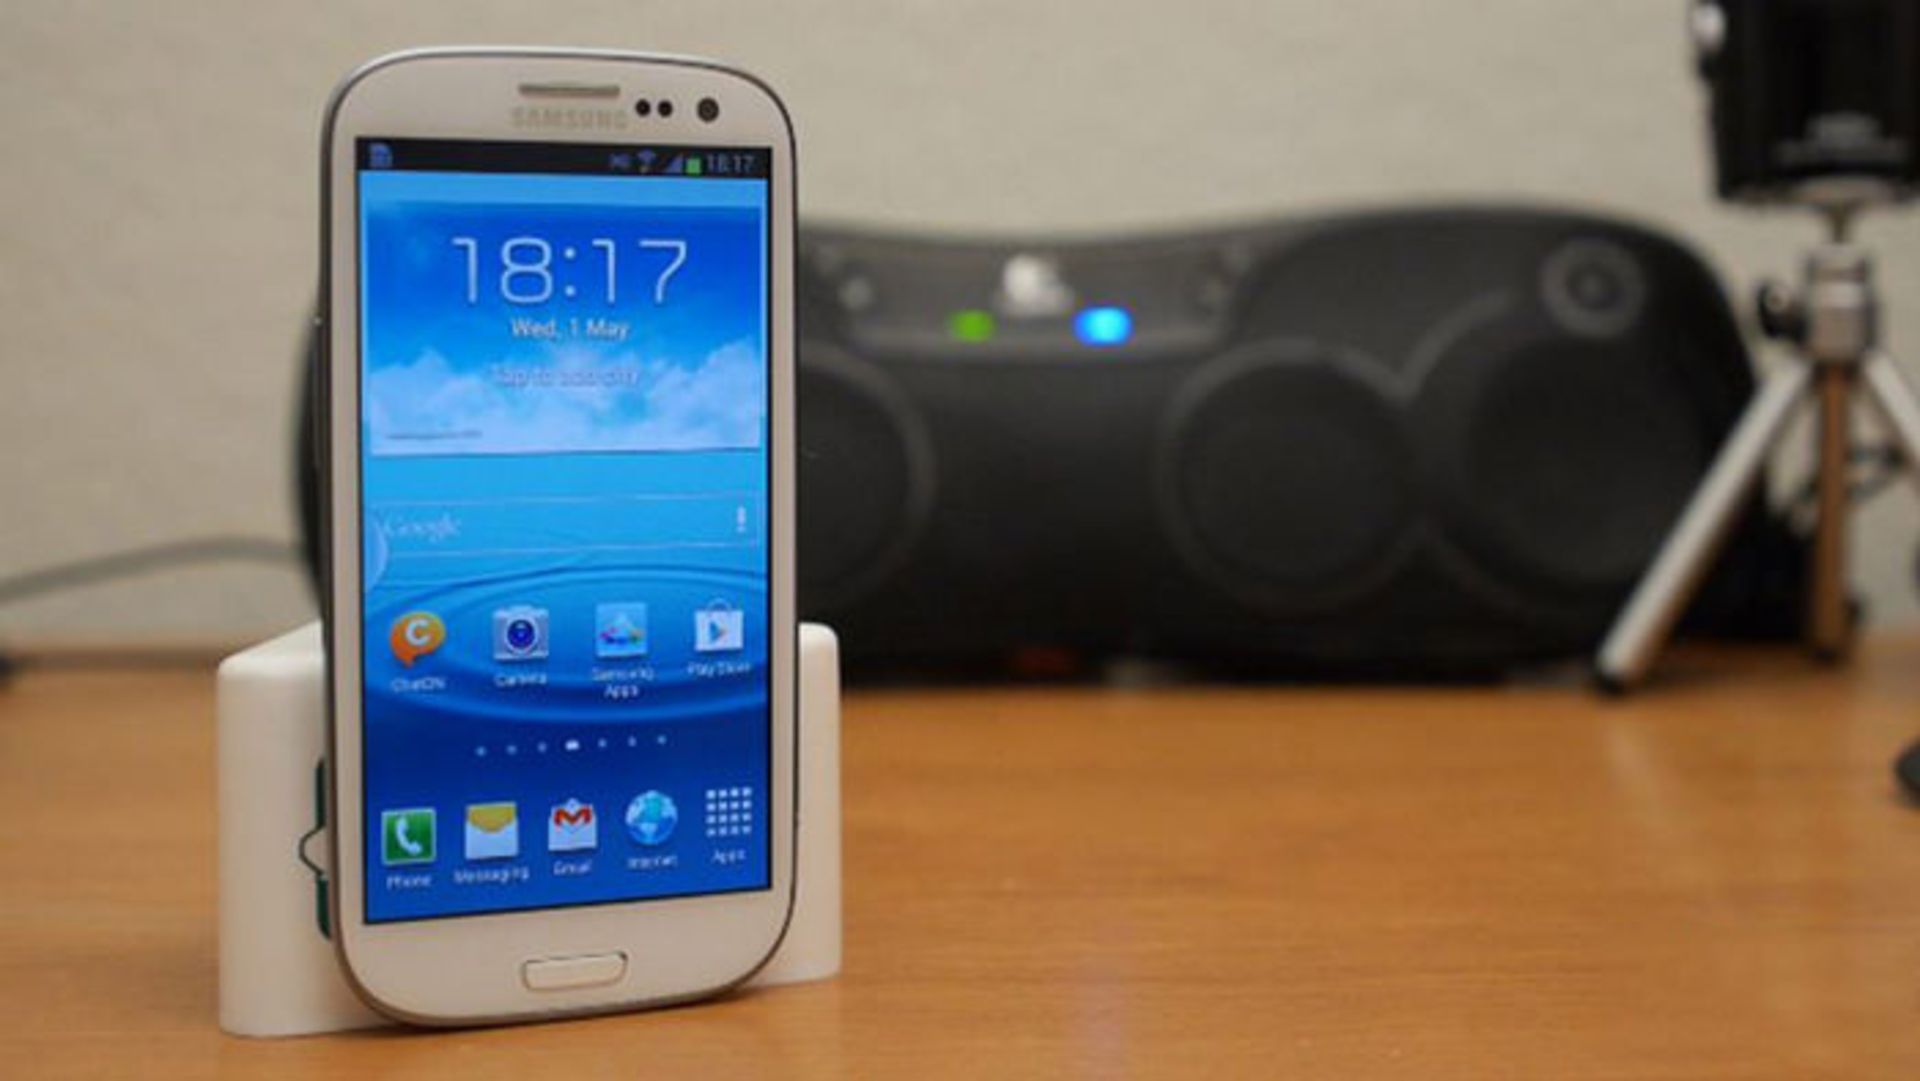 مرجع متخصصين ايران گلكسي اس 3 / Galaxy S3 سامسونگ / Samsung روي ميز چوبي